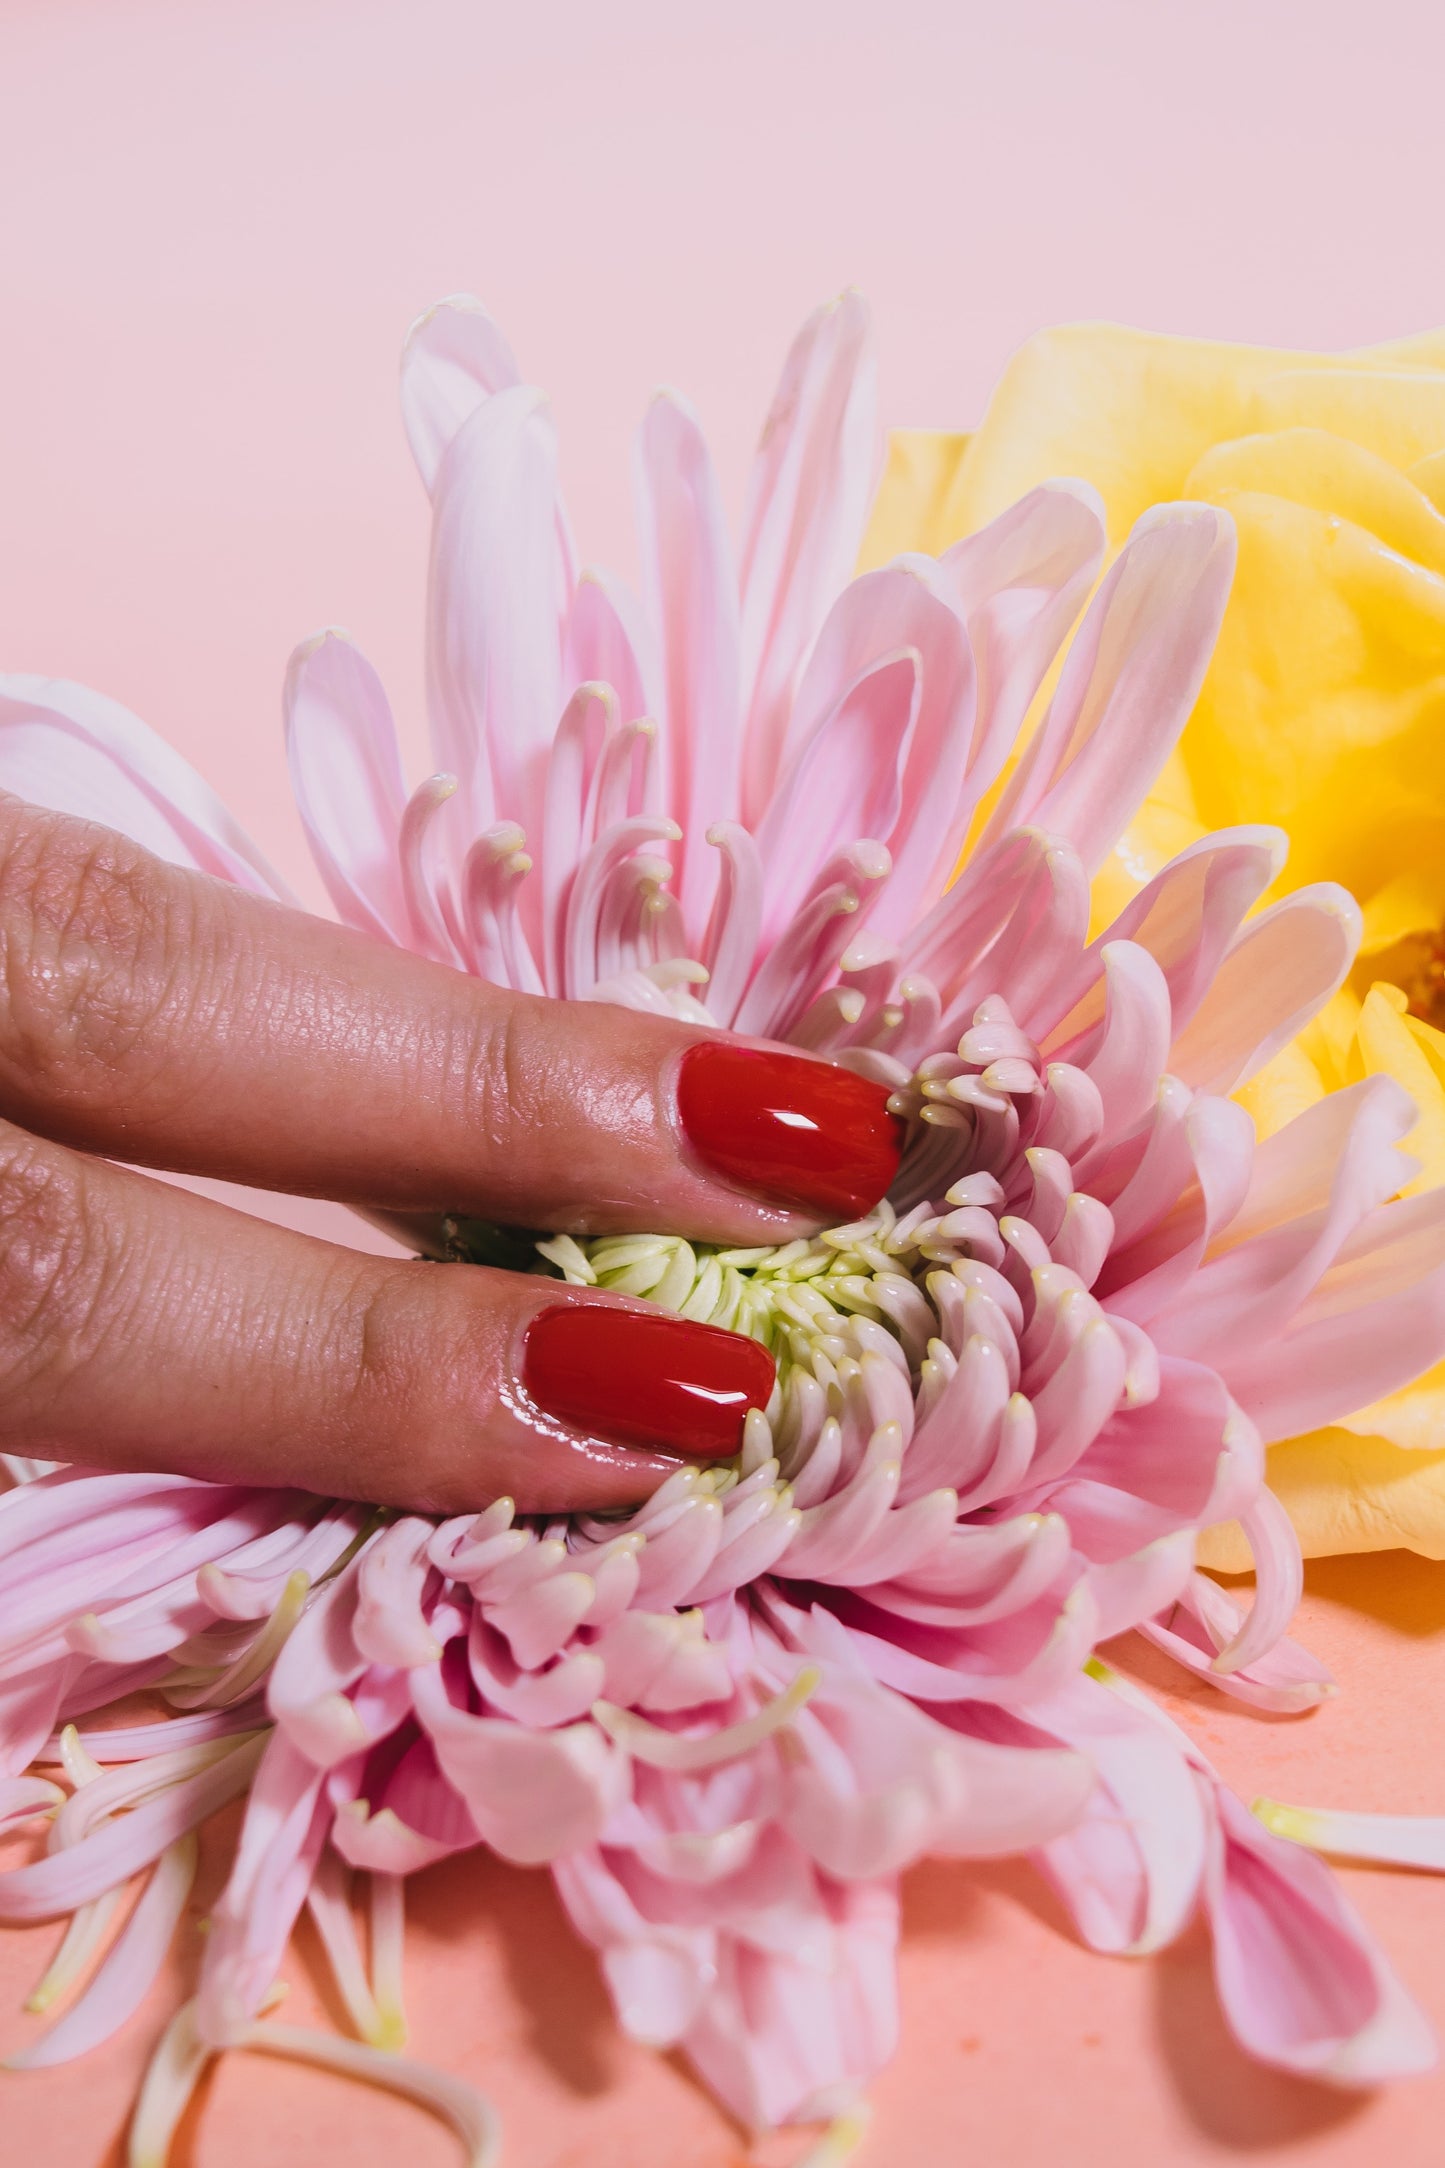 Zwei Finger mit roten Fingernägeln auf rosafarbenen Blüten auf rosa Hintergrund